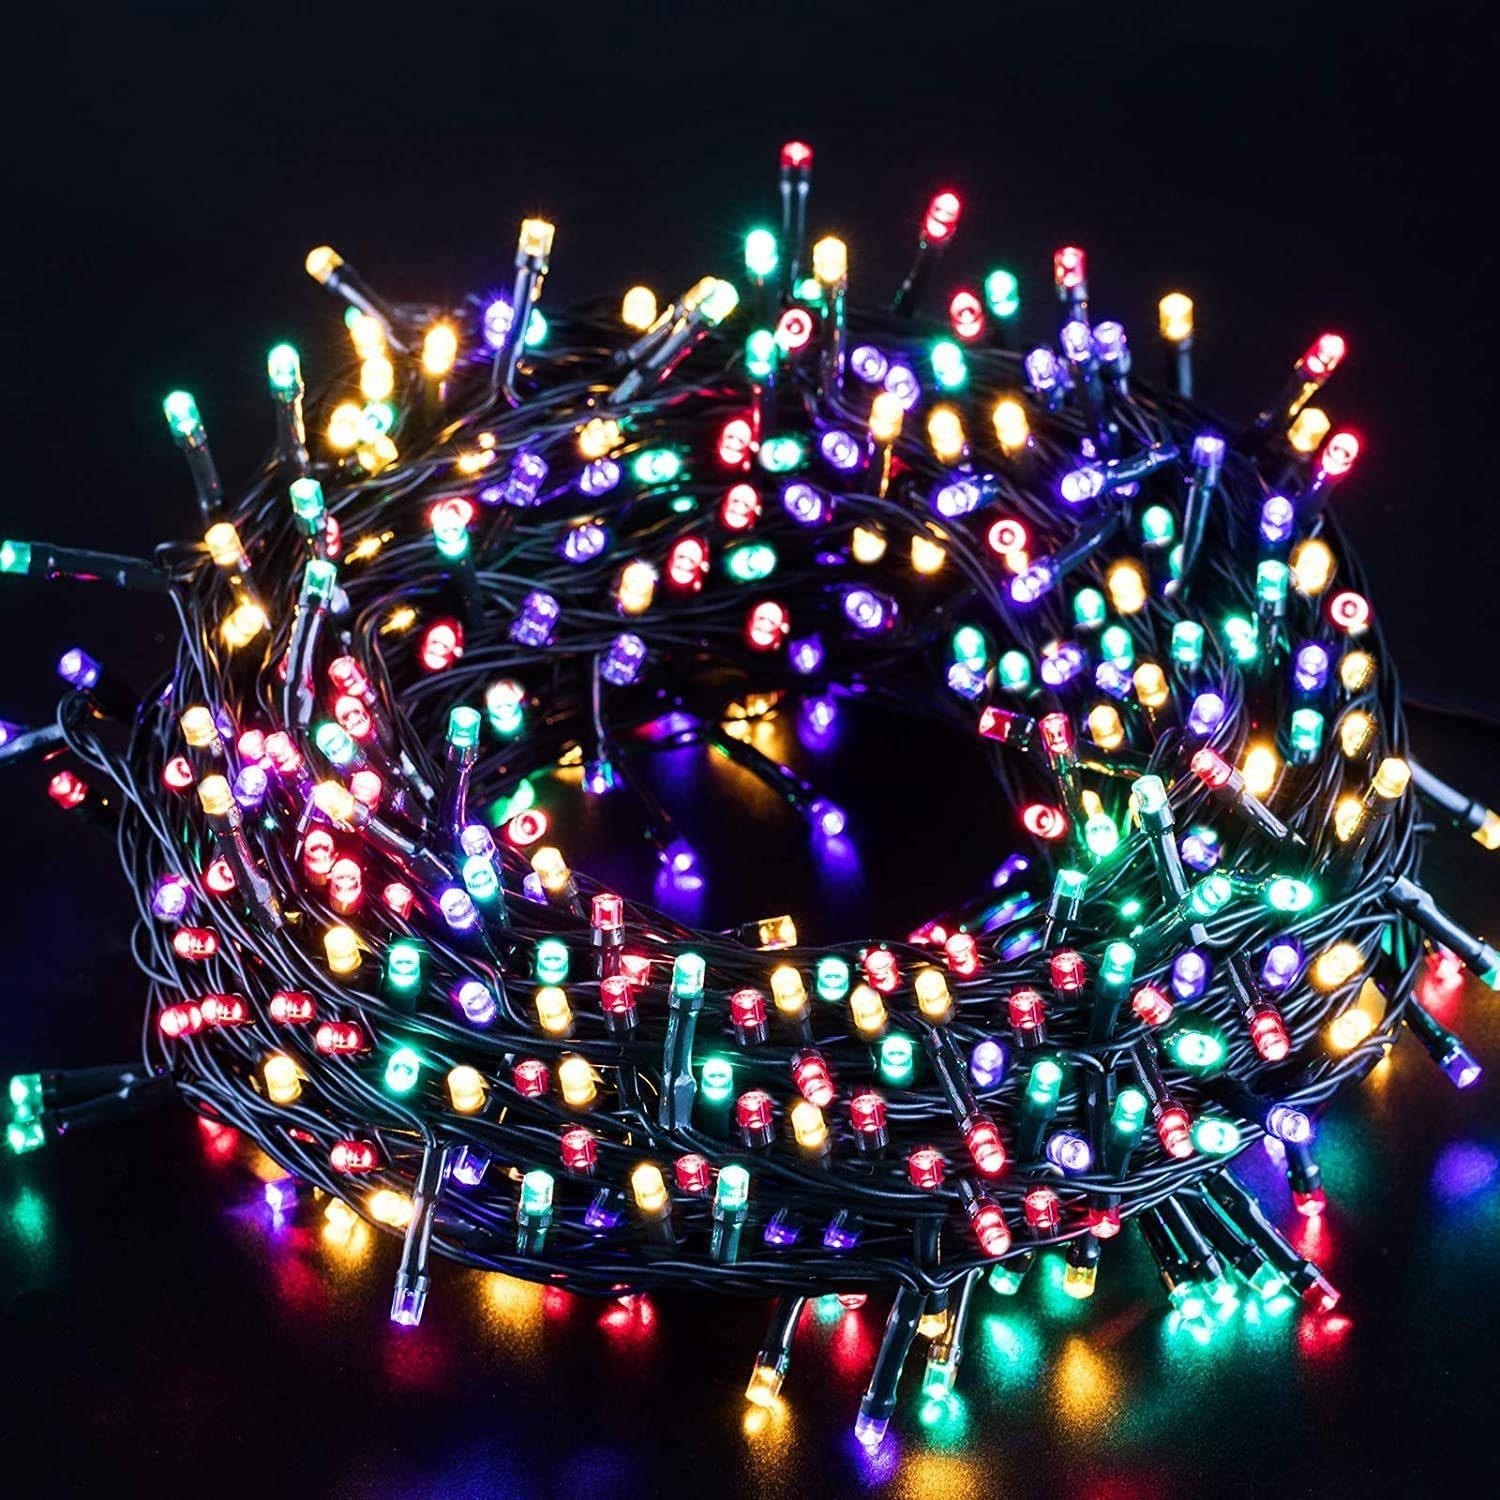 Elegear LED-Lichterkette »LED Lichterkette Bunte 40M 300LED, Lichterkette  Außen Timer 8Modi«, Weihnachtsbeleuchtung für Weihnachtsdeko Weihnachtsbaum  online kaufen | OTTO